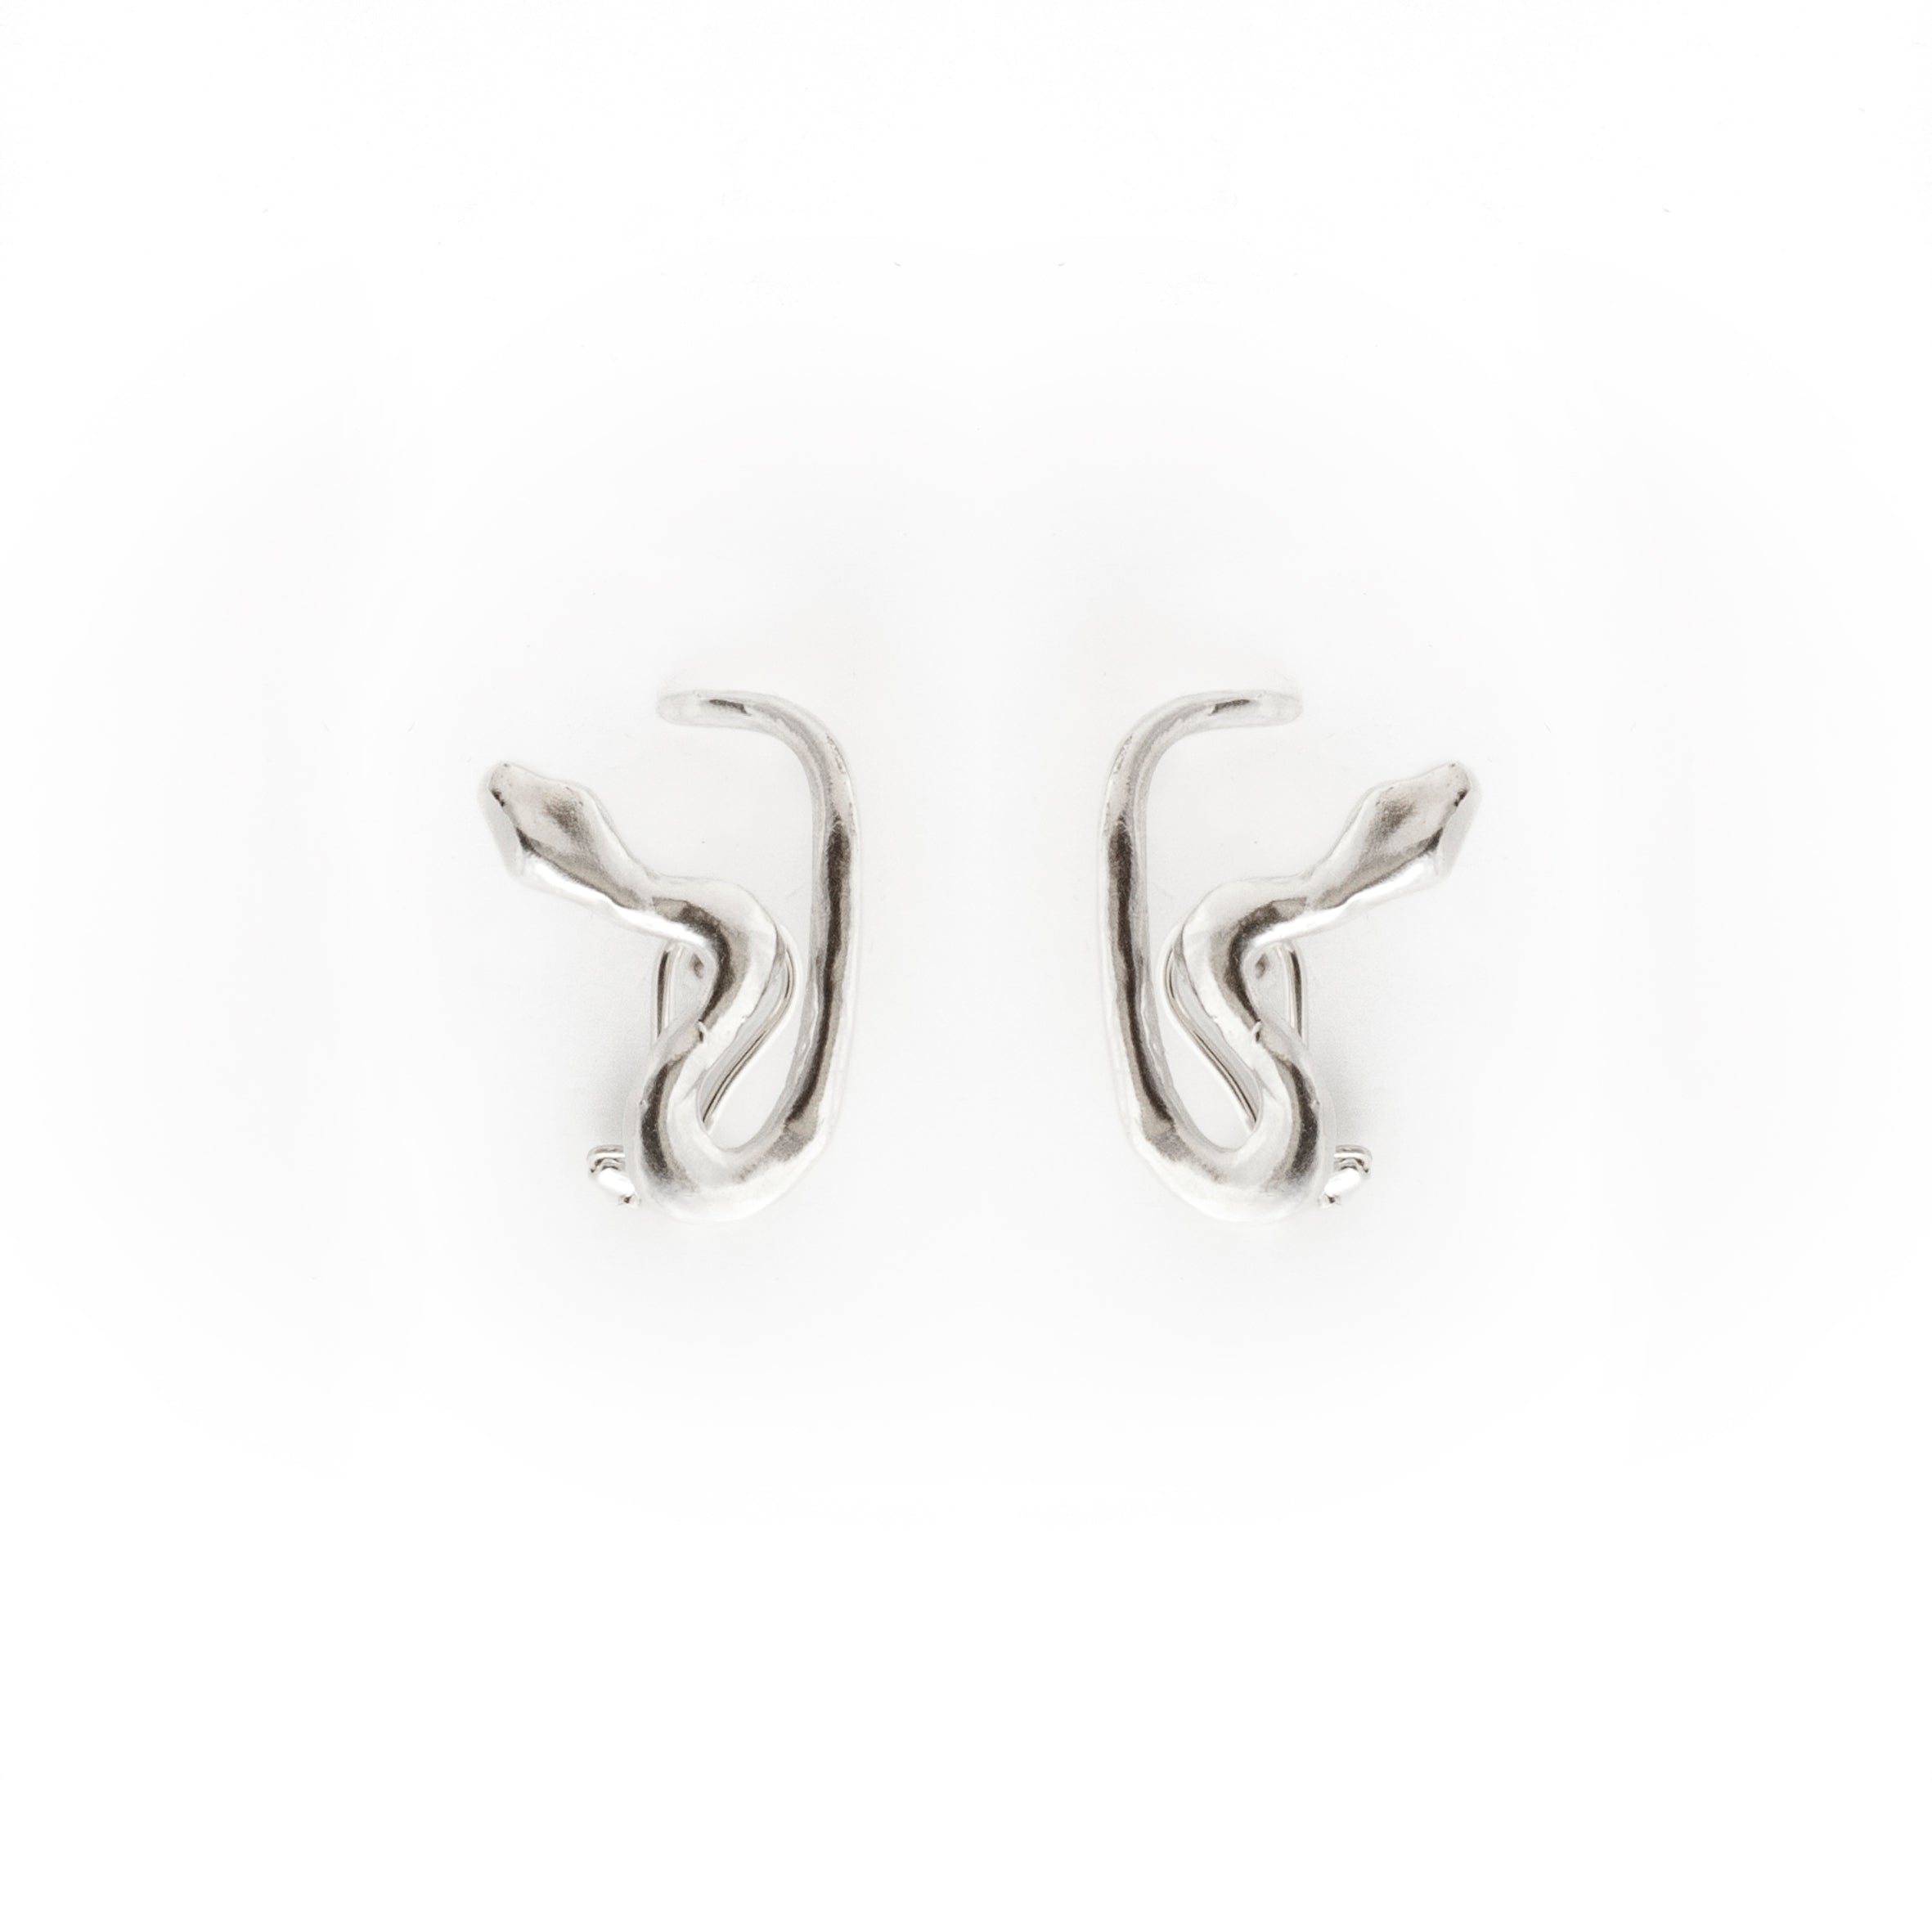 Orecchini - Tail Earrings - Giulia Barela Jewelry | Gioielli eleganti e particolari fatti in Italia